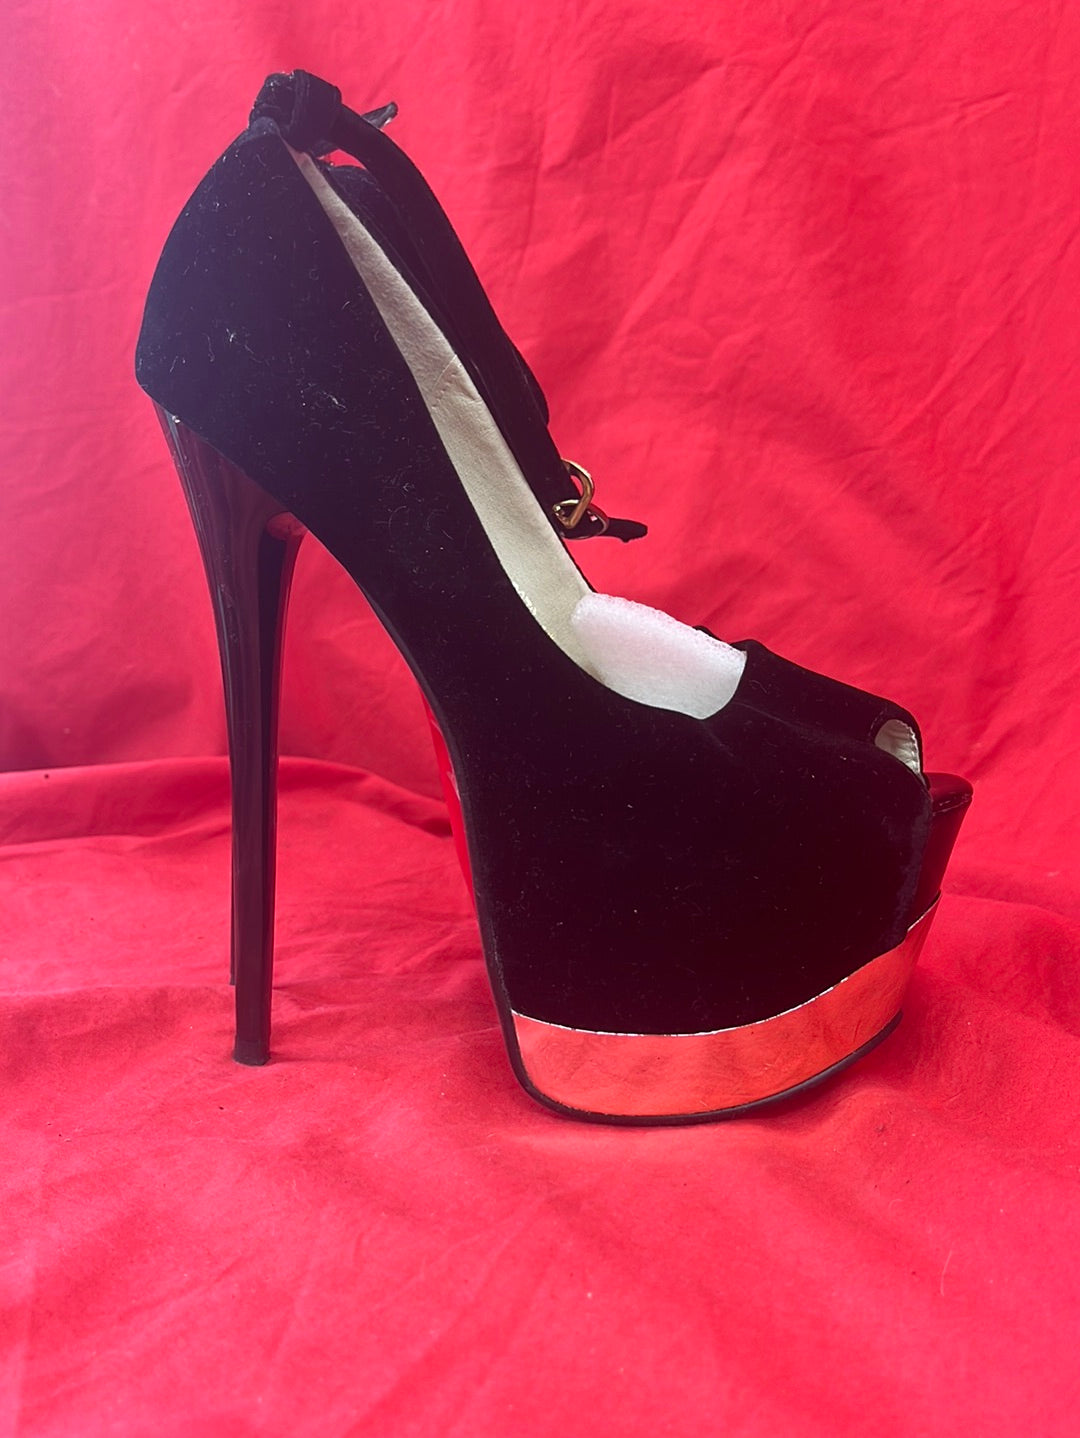 Women's Platform Ankle Strap Heels - Black / Red